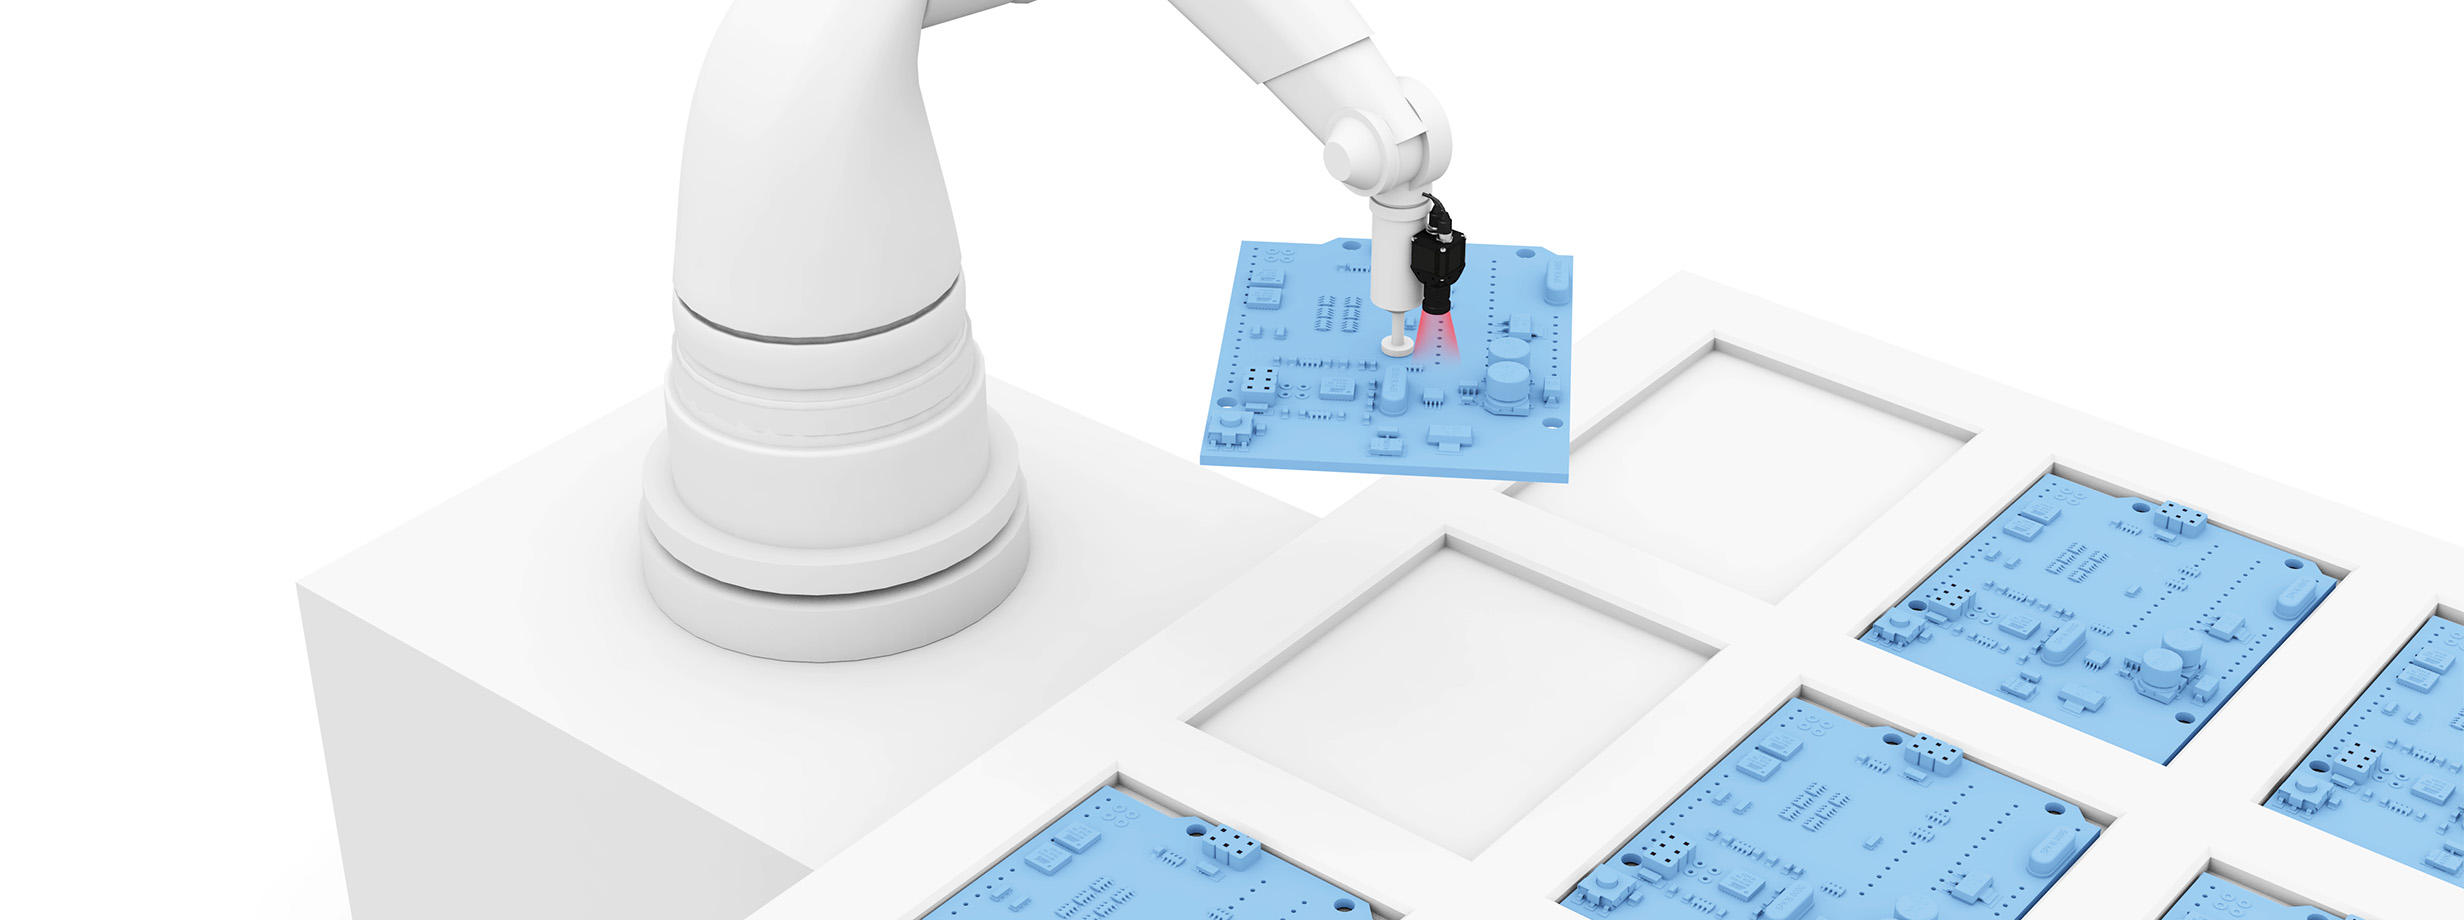 Controle preciso do robô em aplicações pick-and-place image